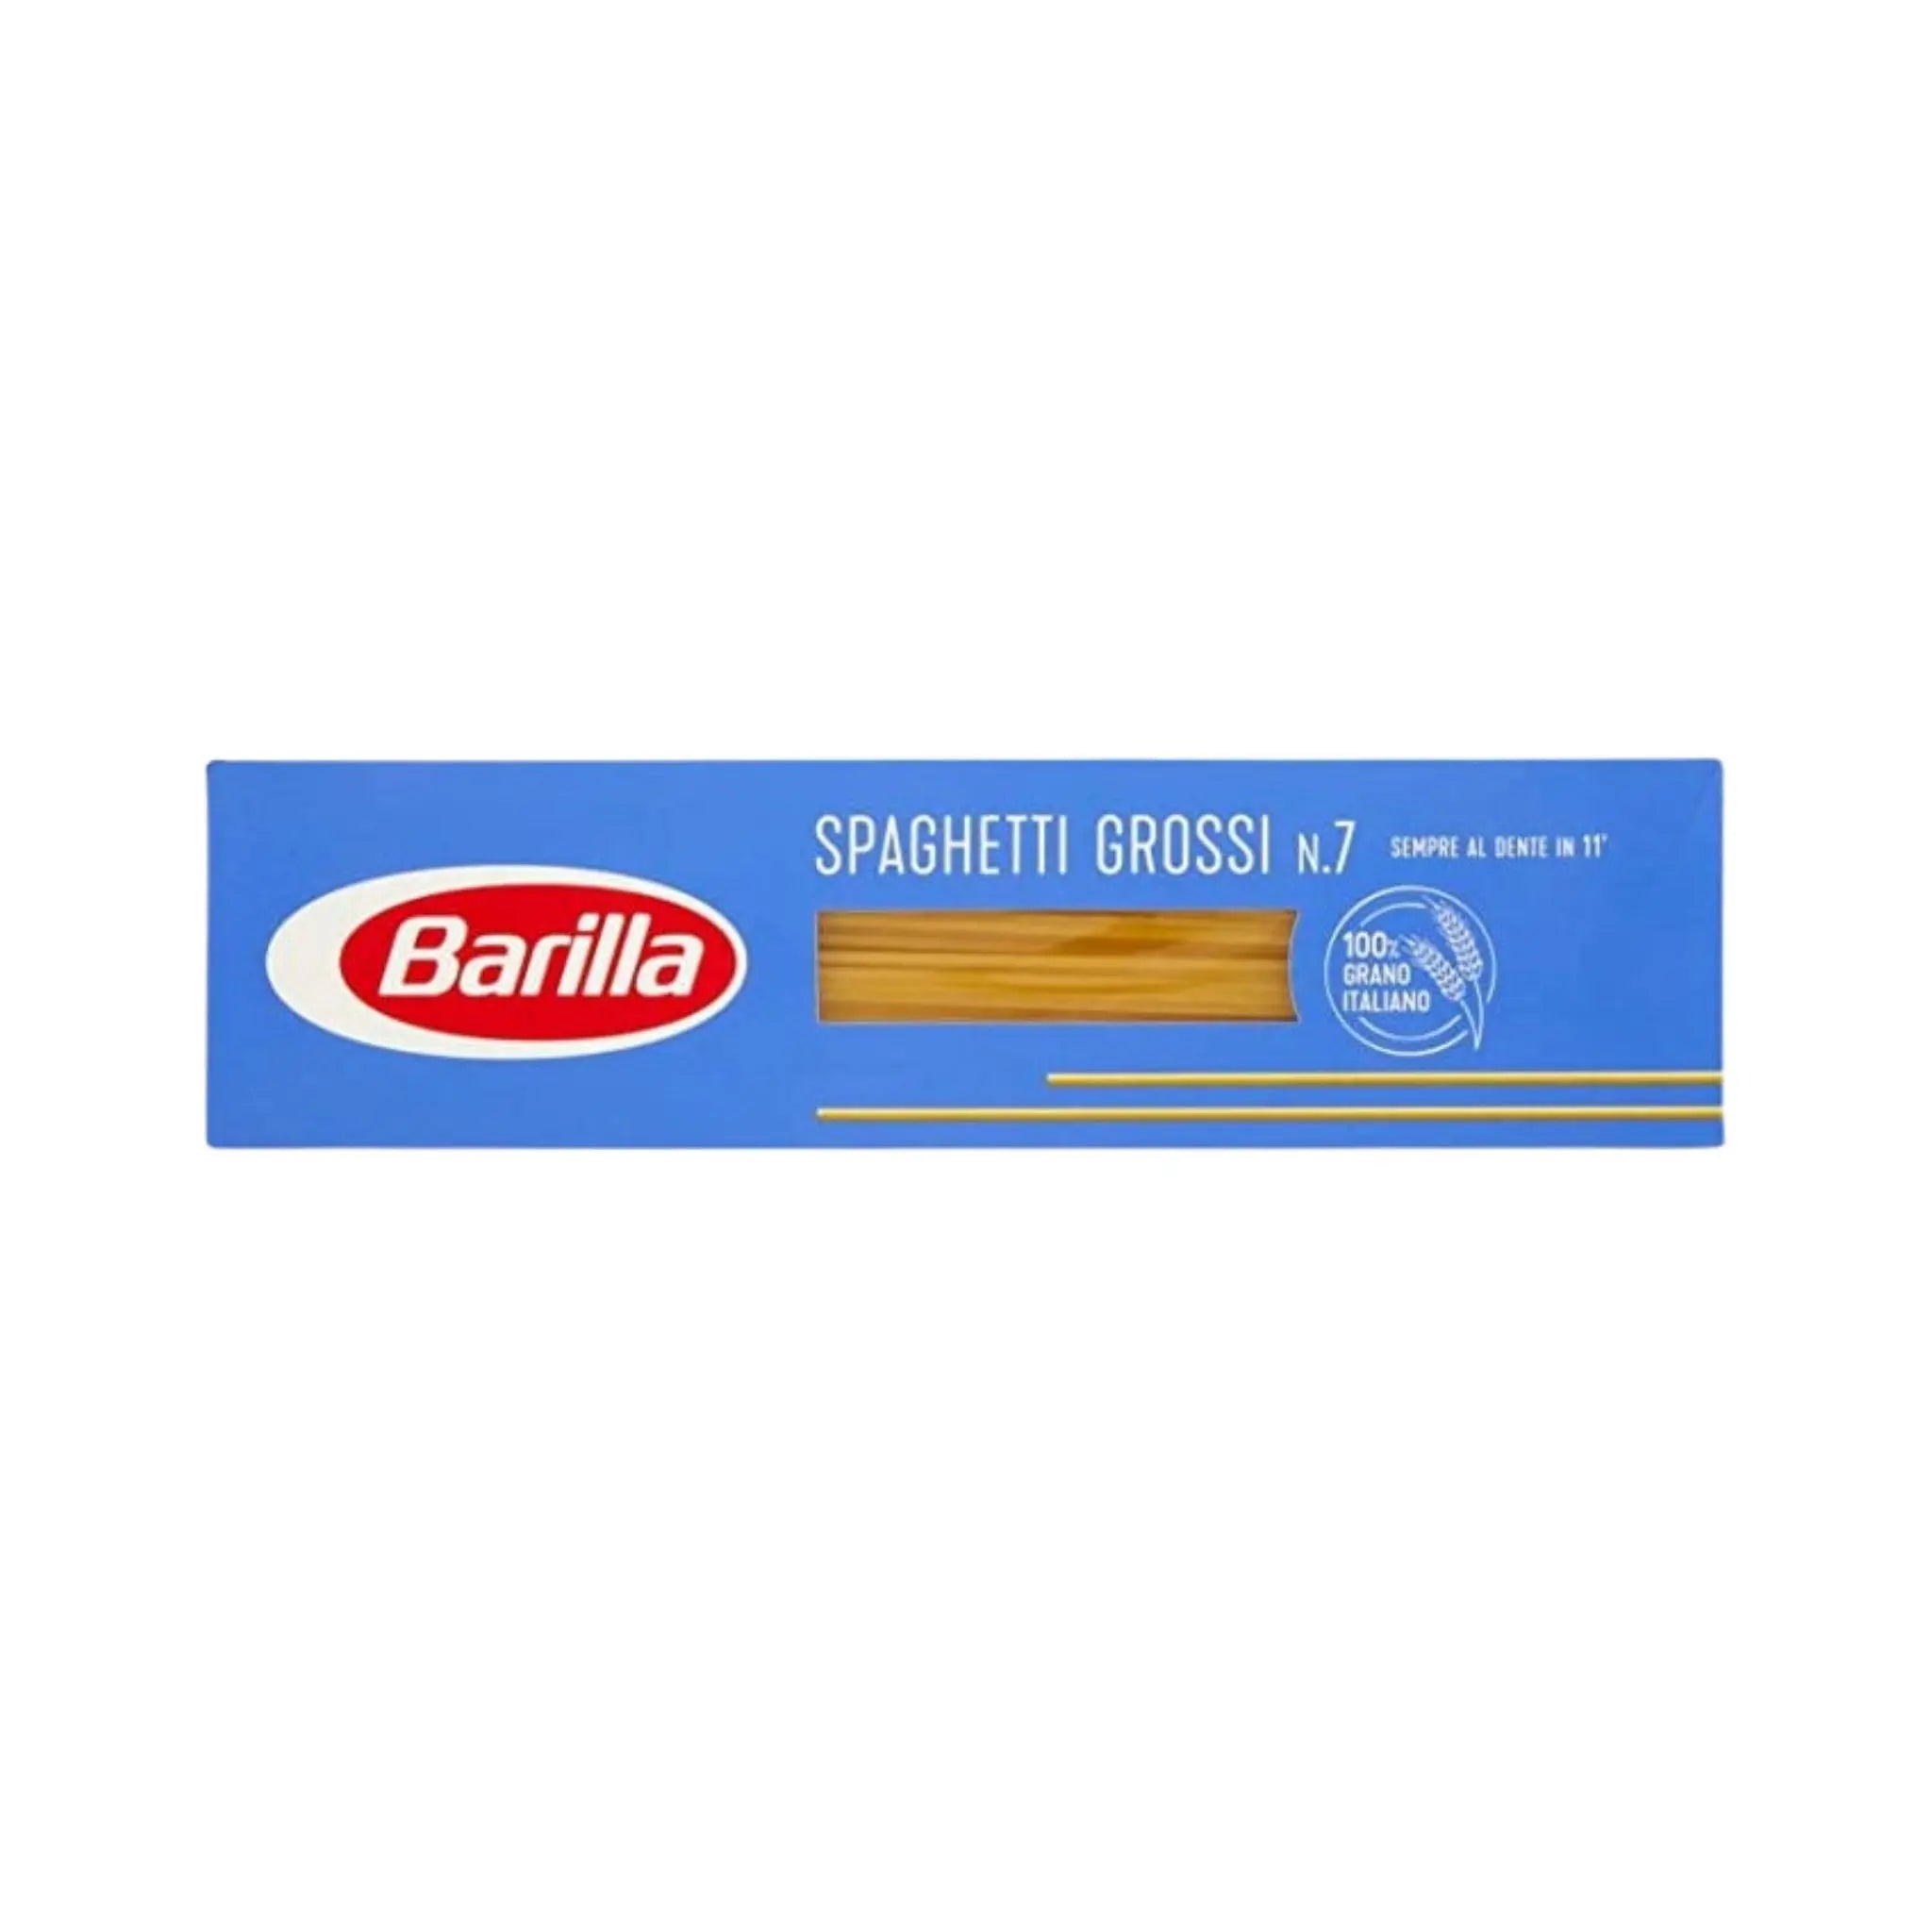 Barilla Spaghetti Grossi No.7 - 35x500g (1 carton) - Marino.AE